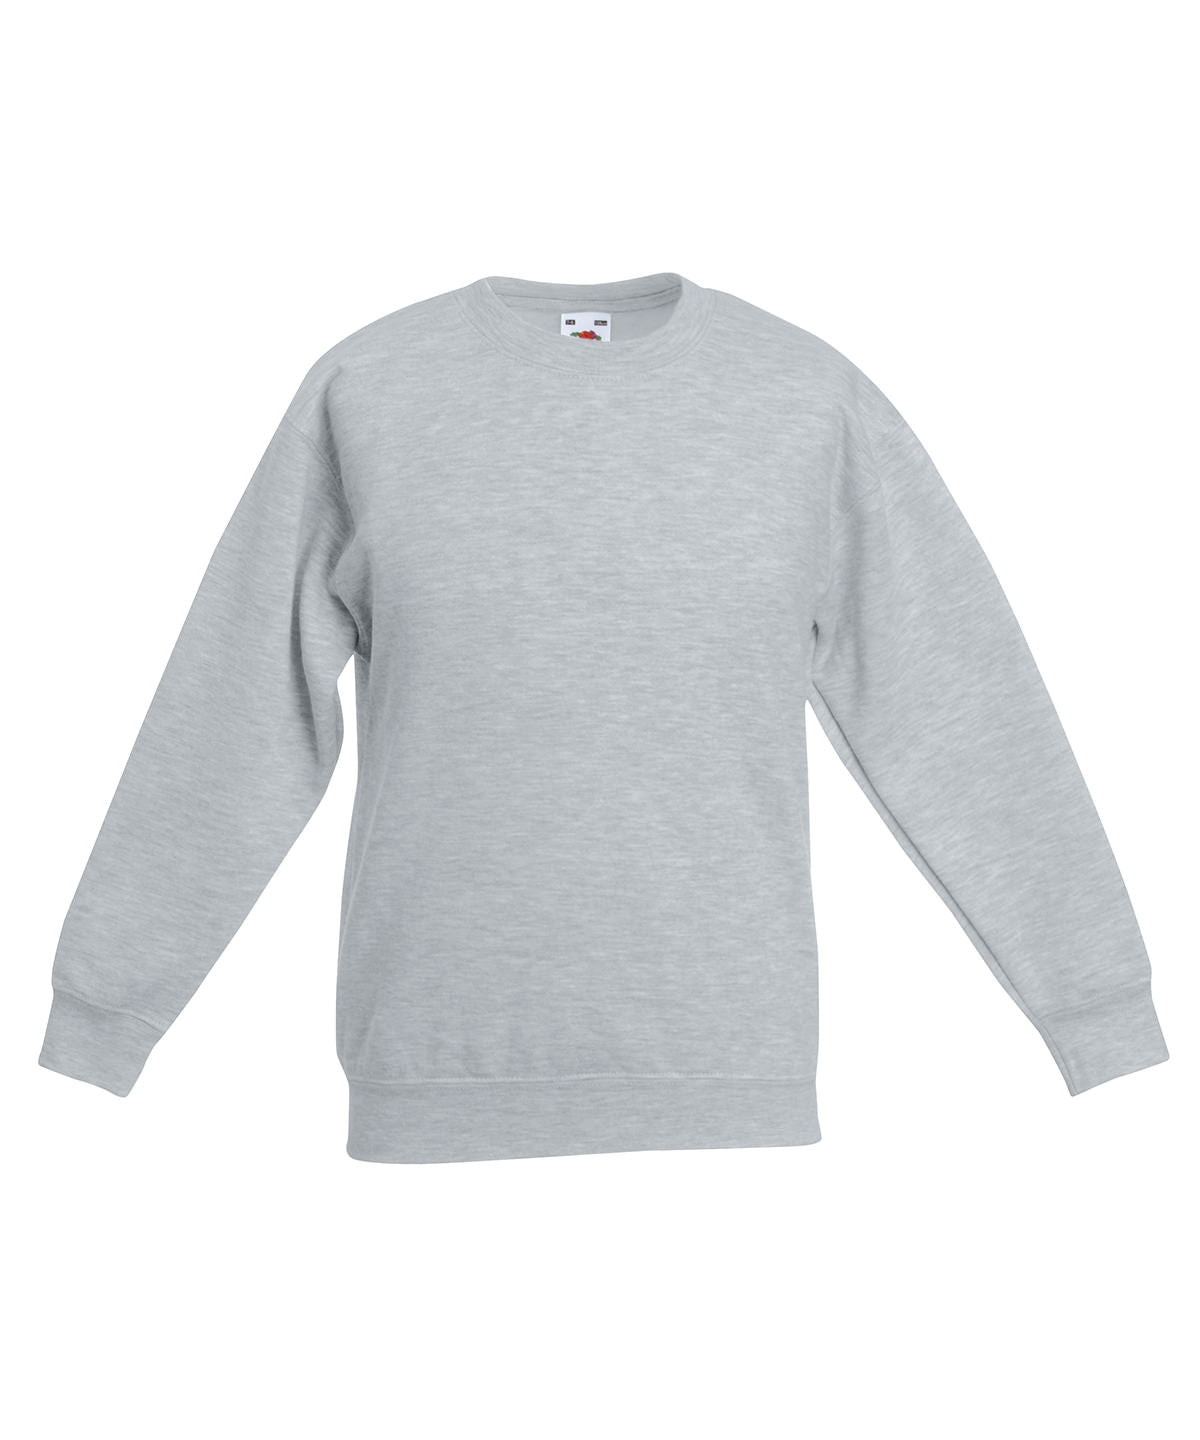 Personalised Sweatshirts - Black Fruit of the Loom Kids premium set-in sweatshirt